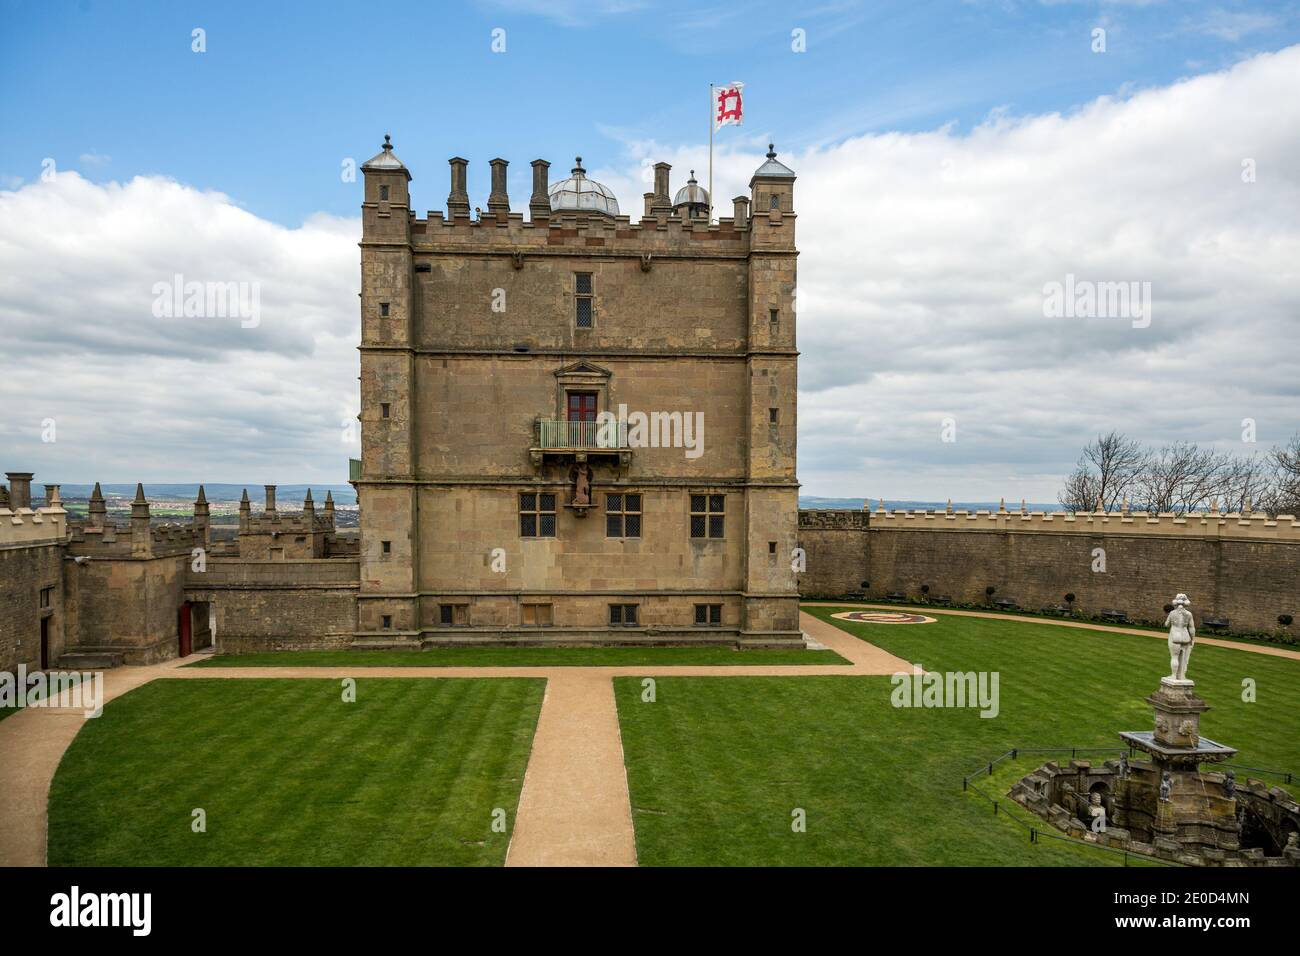 Le petit château et le jardin des fontaines du château de Bolsover à Derbyshire, Angleterre, Royaume-Uni. Un bâtiment classé de grade 1 dans le soin du patrimoine anglais Banque D'Images